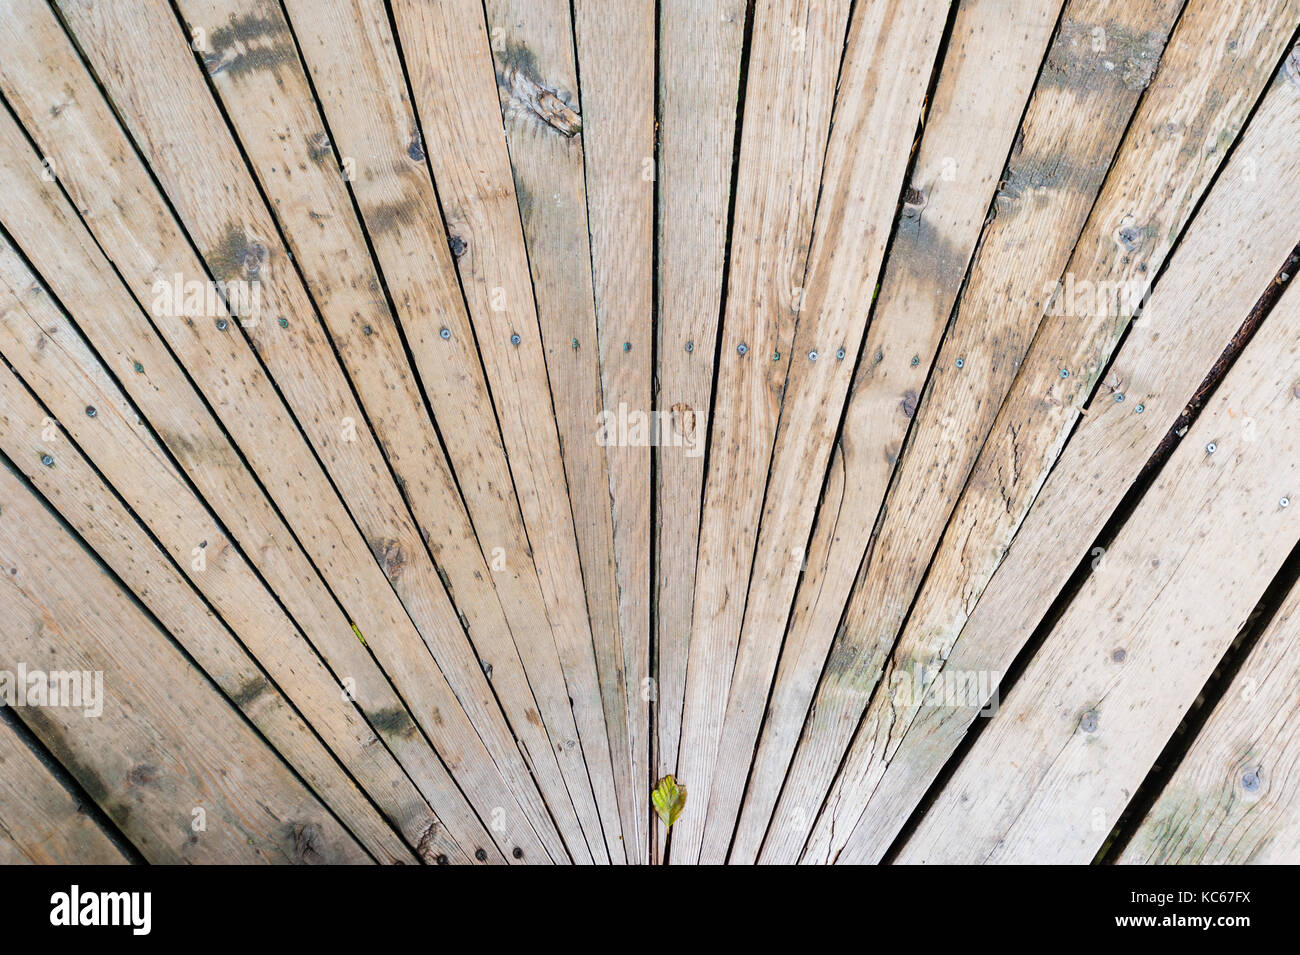 Weathered listoni in legno con la linea di viti, convergenti verso il basso in prospettiva. Foto Stock